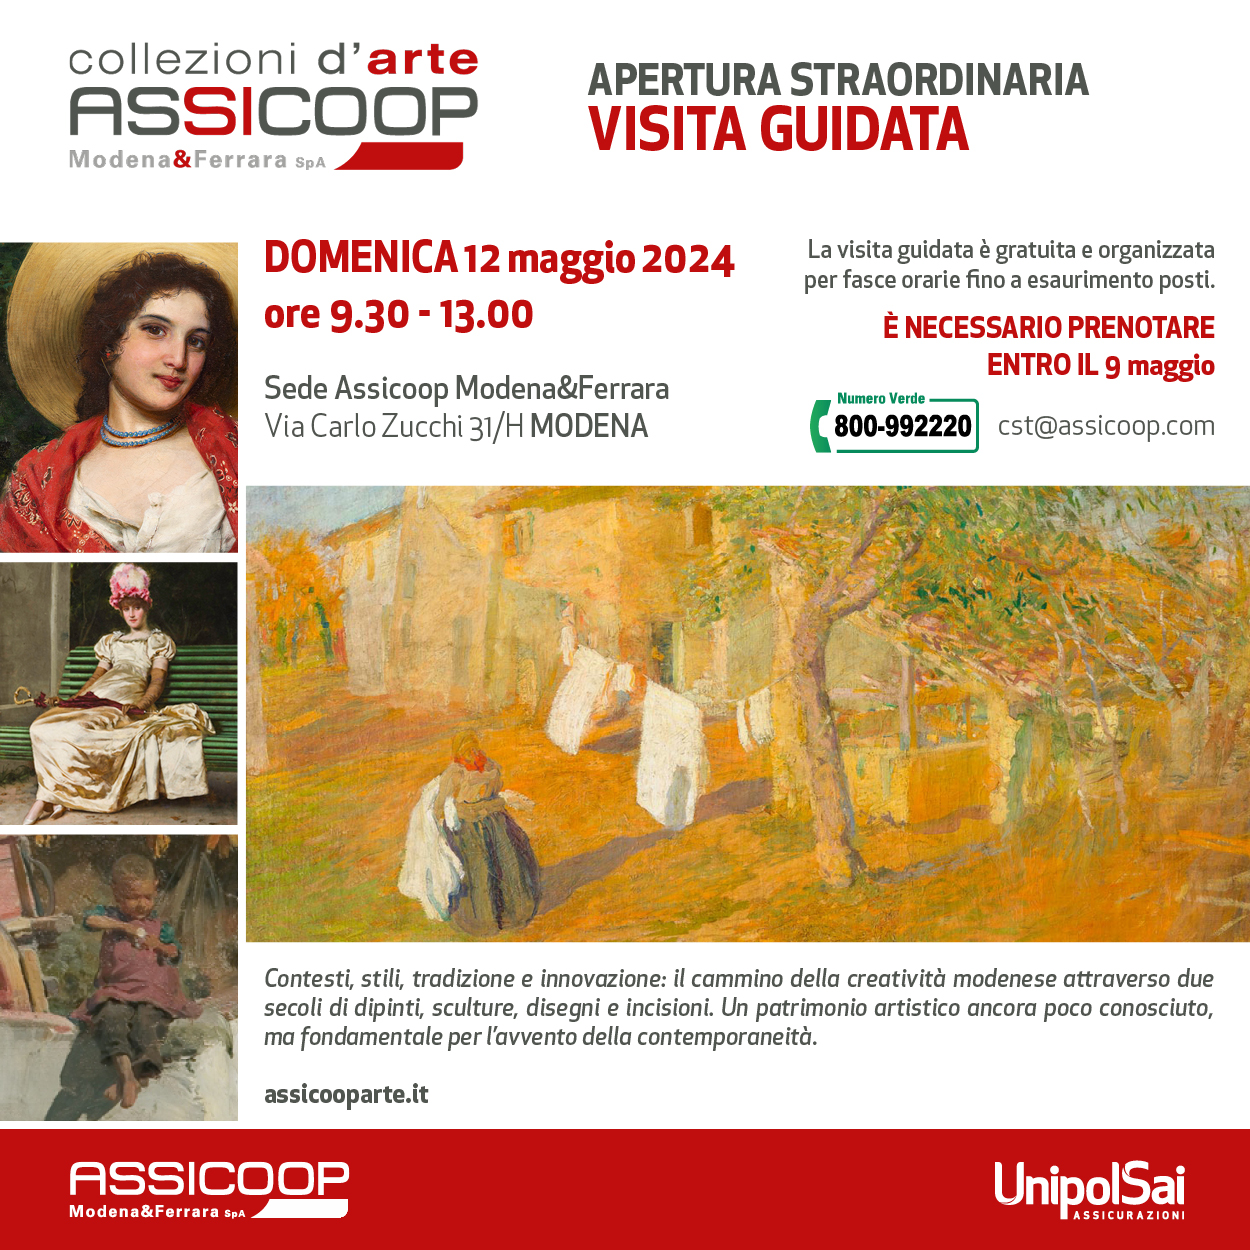 Vista guidata alla Raccolta d’arte di Assicoop Modena&Ferrara domenica 12 maggio